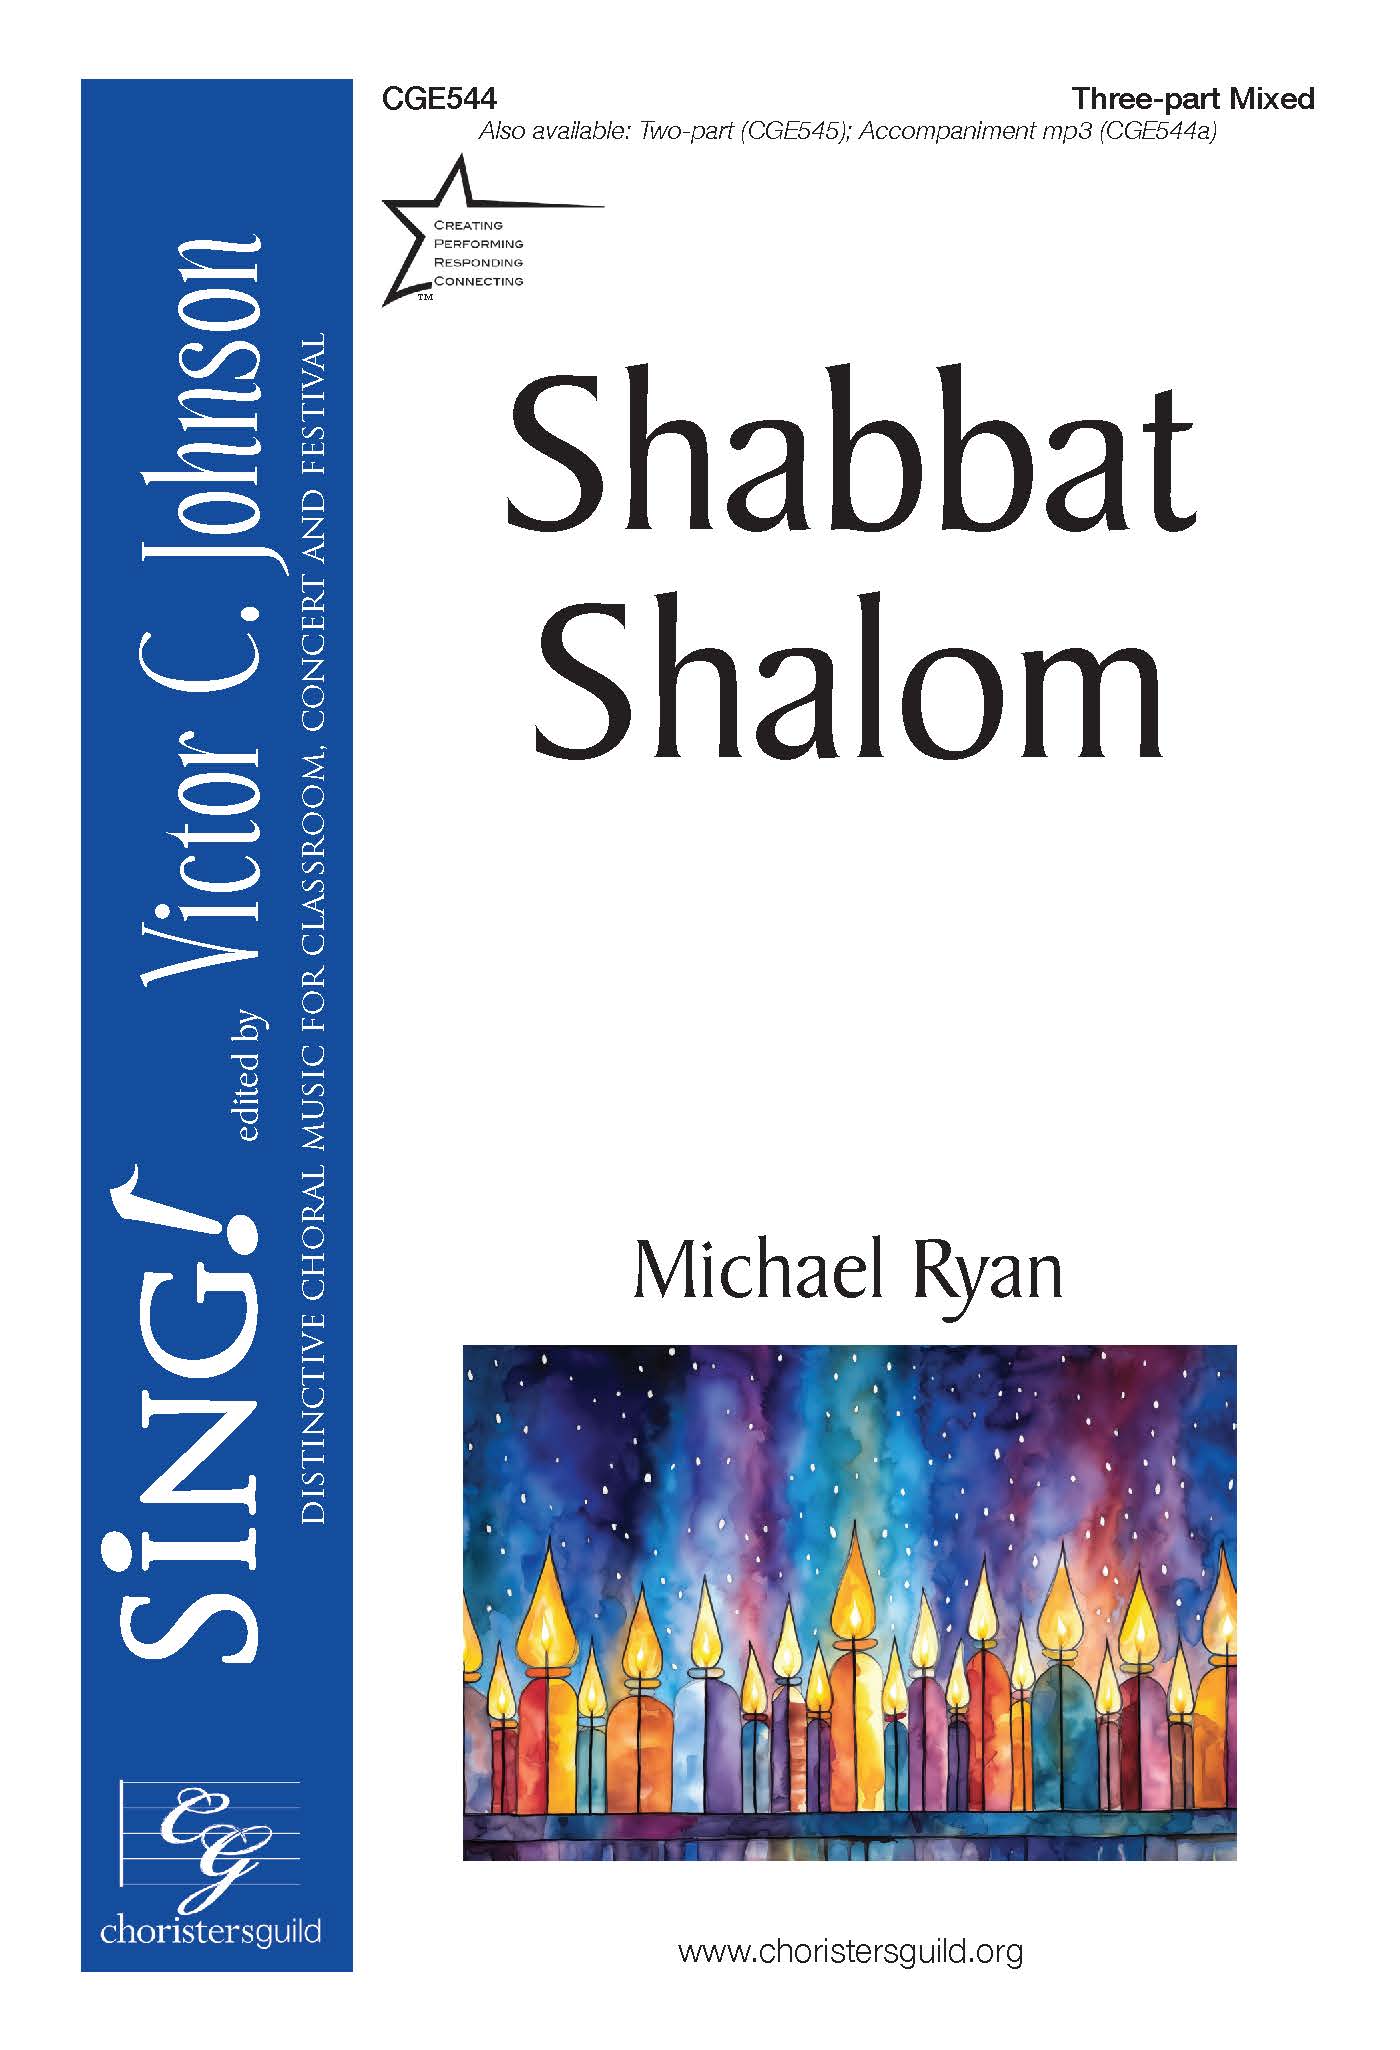 Shabbat Shalom - Three-part Mixed